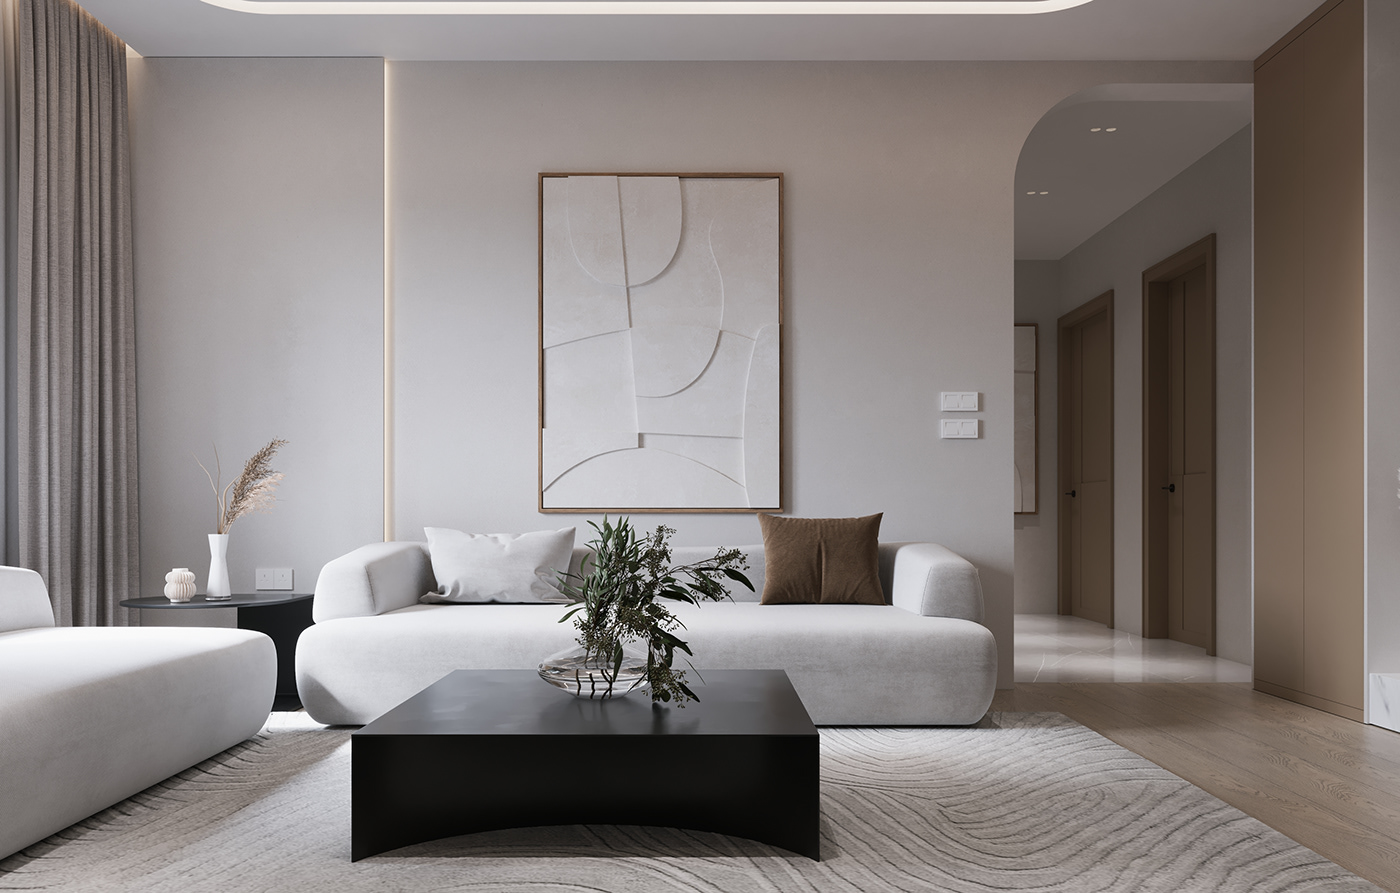 Interior minimal Minimalism minimalist apartment living design lounge modern simple